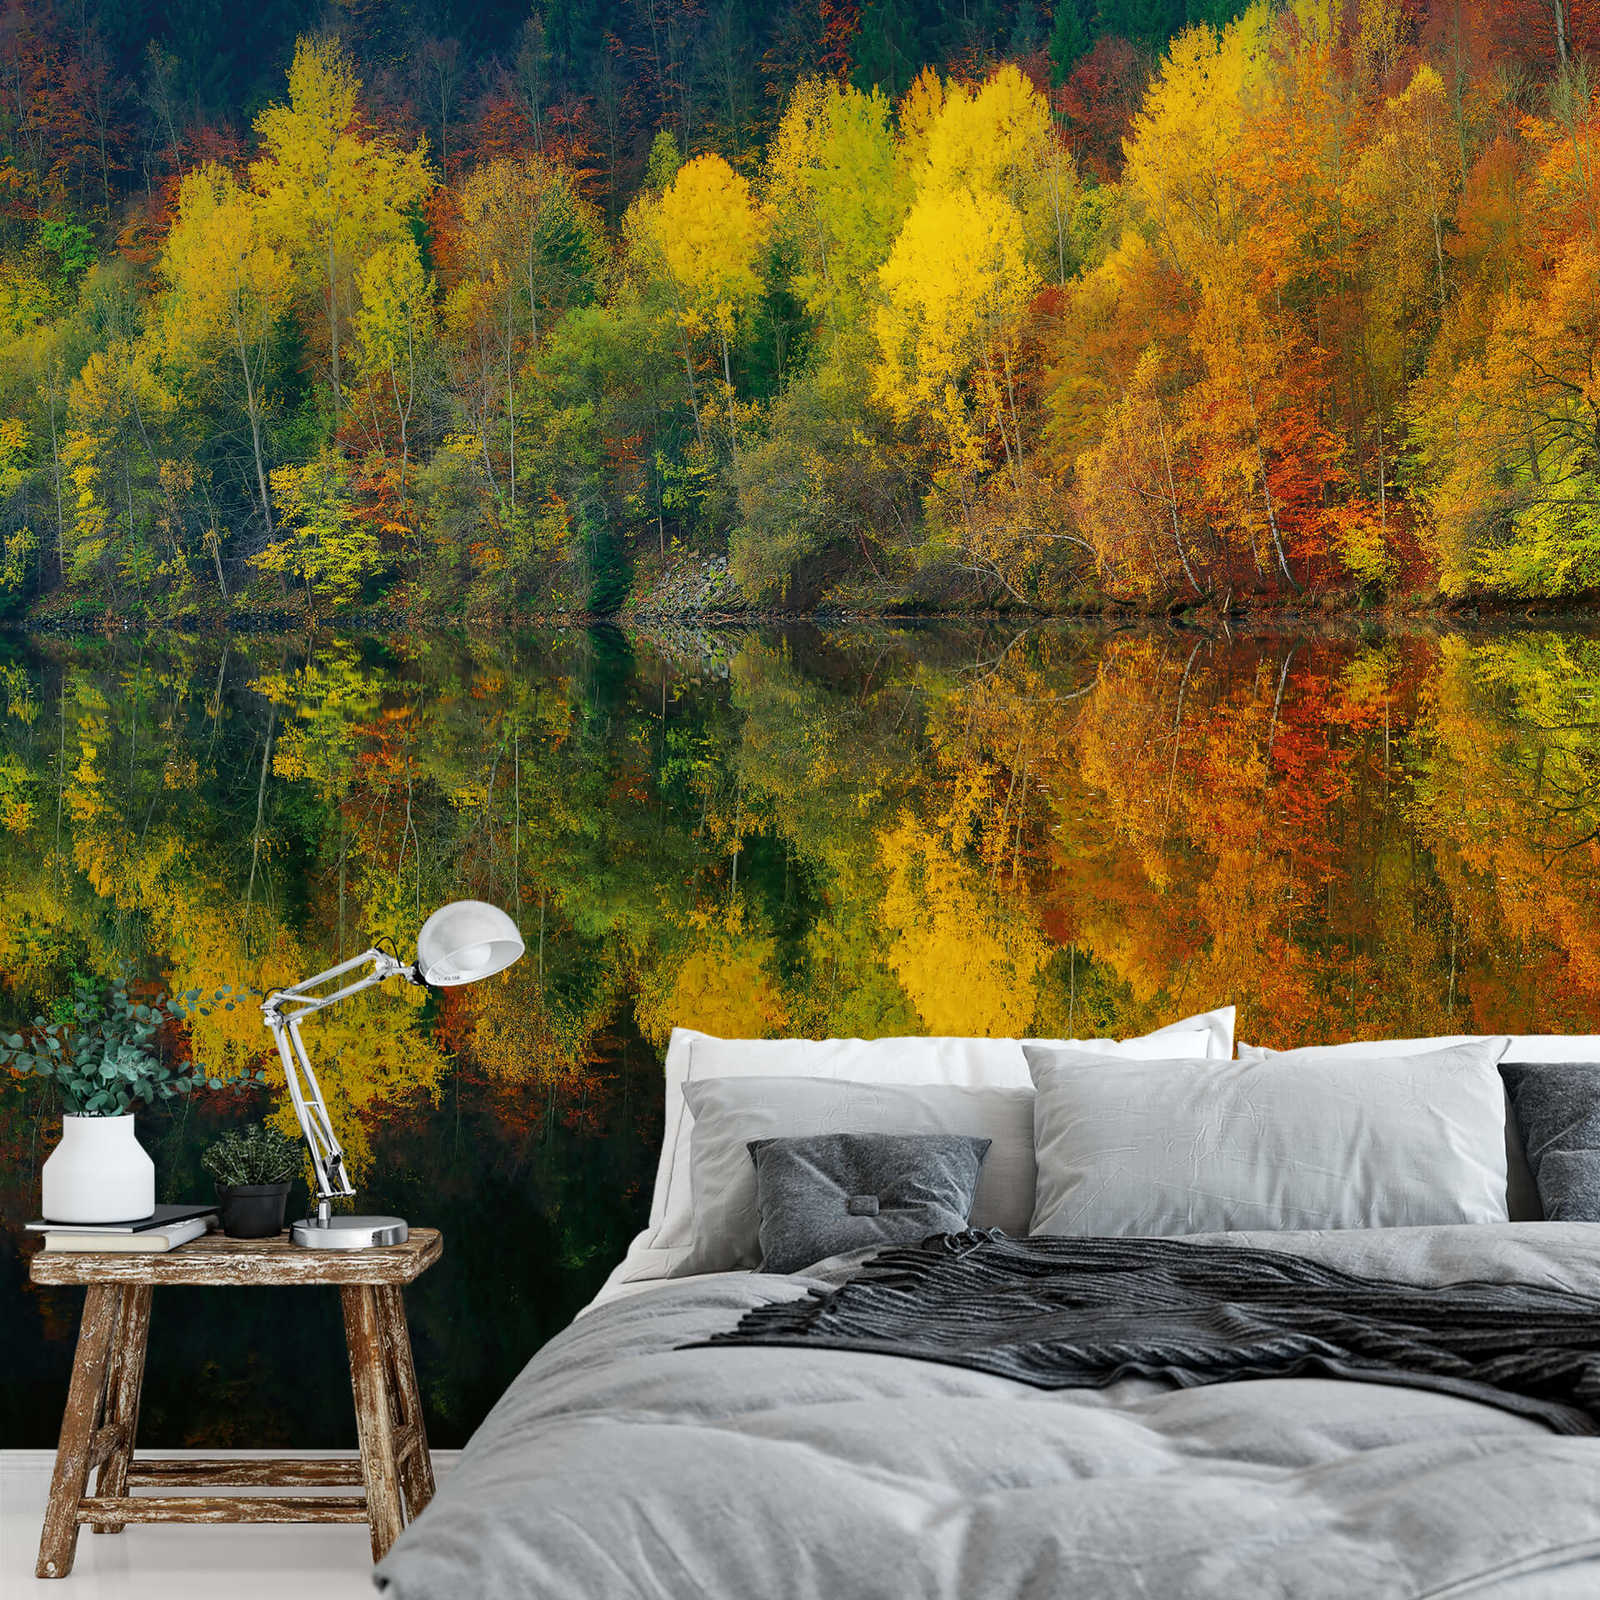             Fotomural Bosque junto al lago en otoño - Amarillo, naranja, verde
        